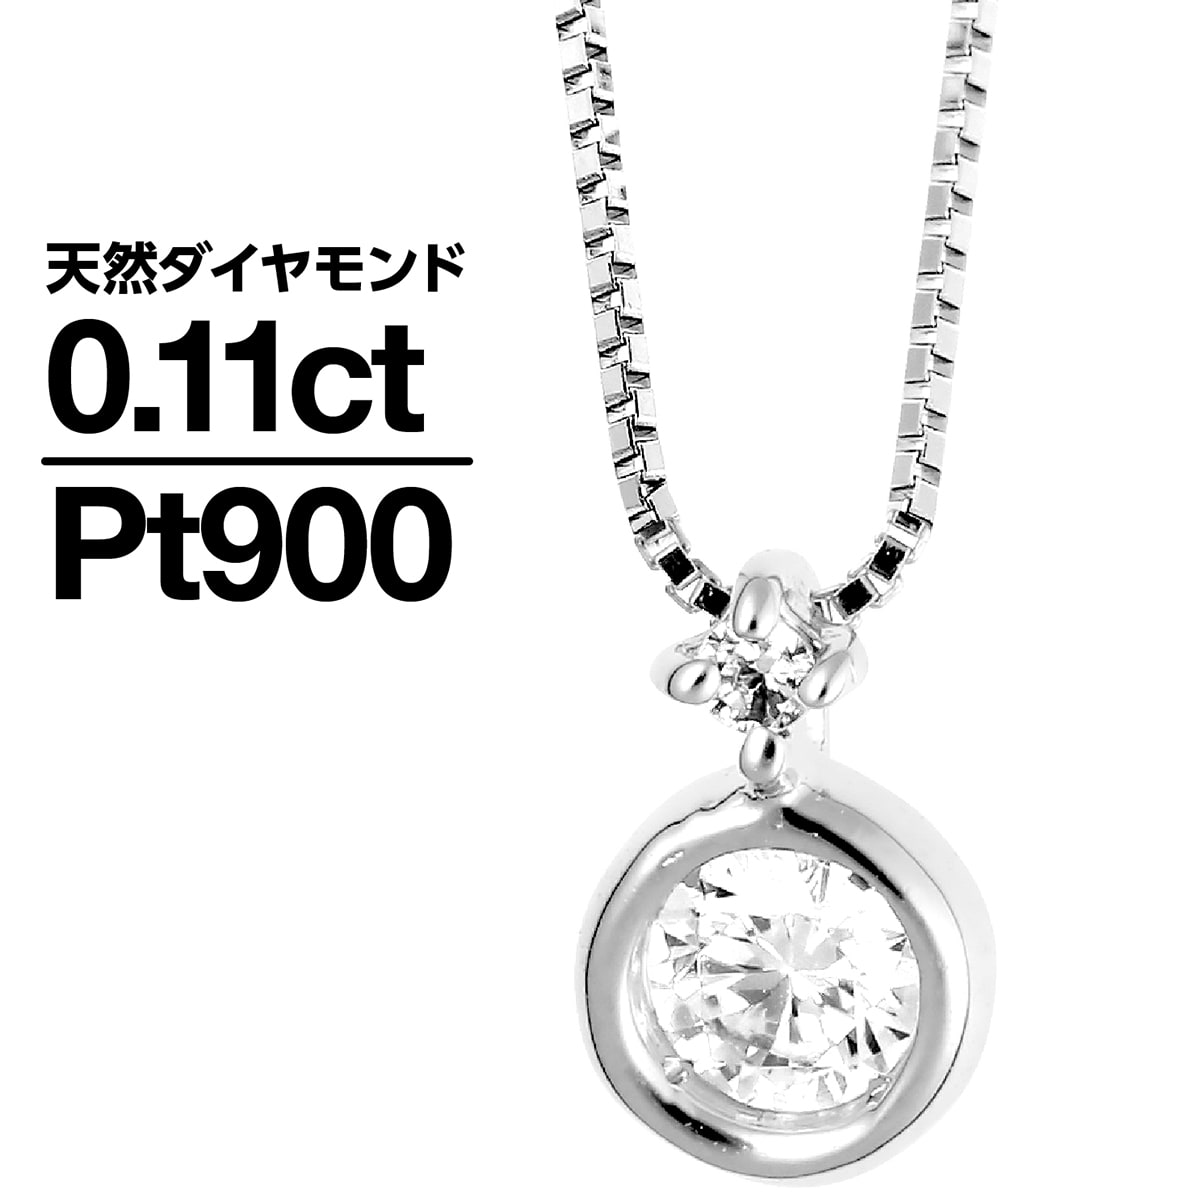 ダイヤモンド ネックレス プラチナ900 天然ダイヤ 品質保証書 金属